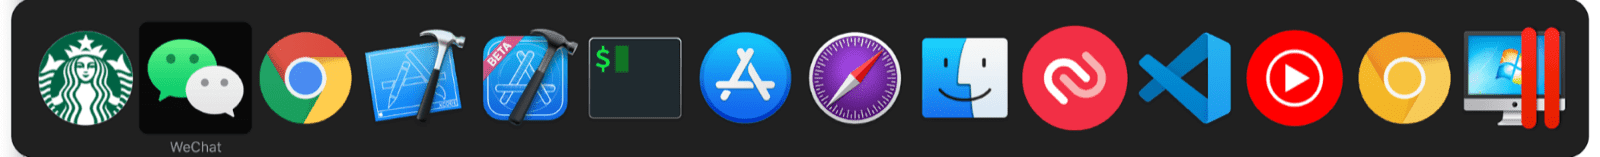 מתג ריבוי המשימות ב-macOS כולל מיני אפליקציות לצד אפליקציה רגילה של macOS.